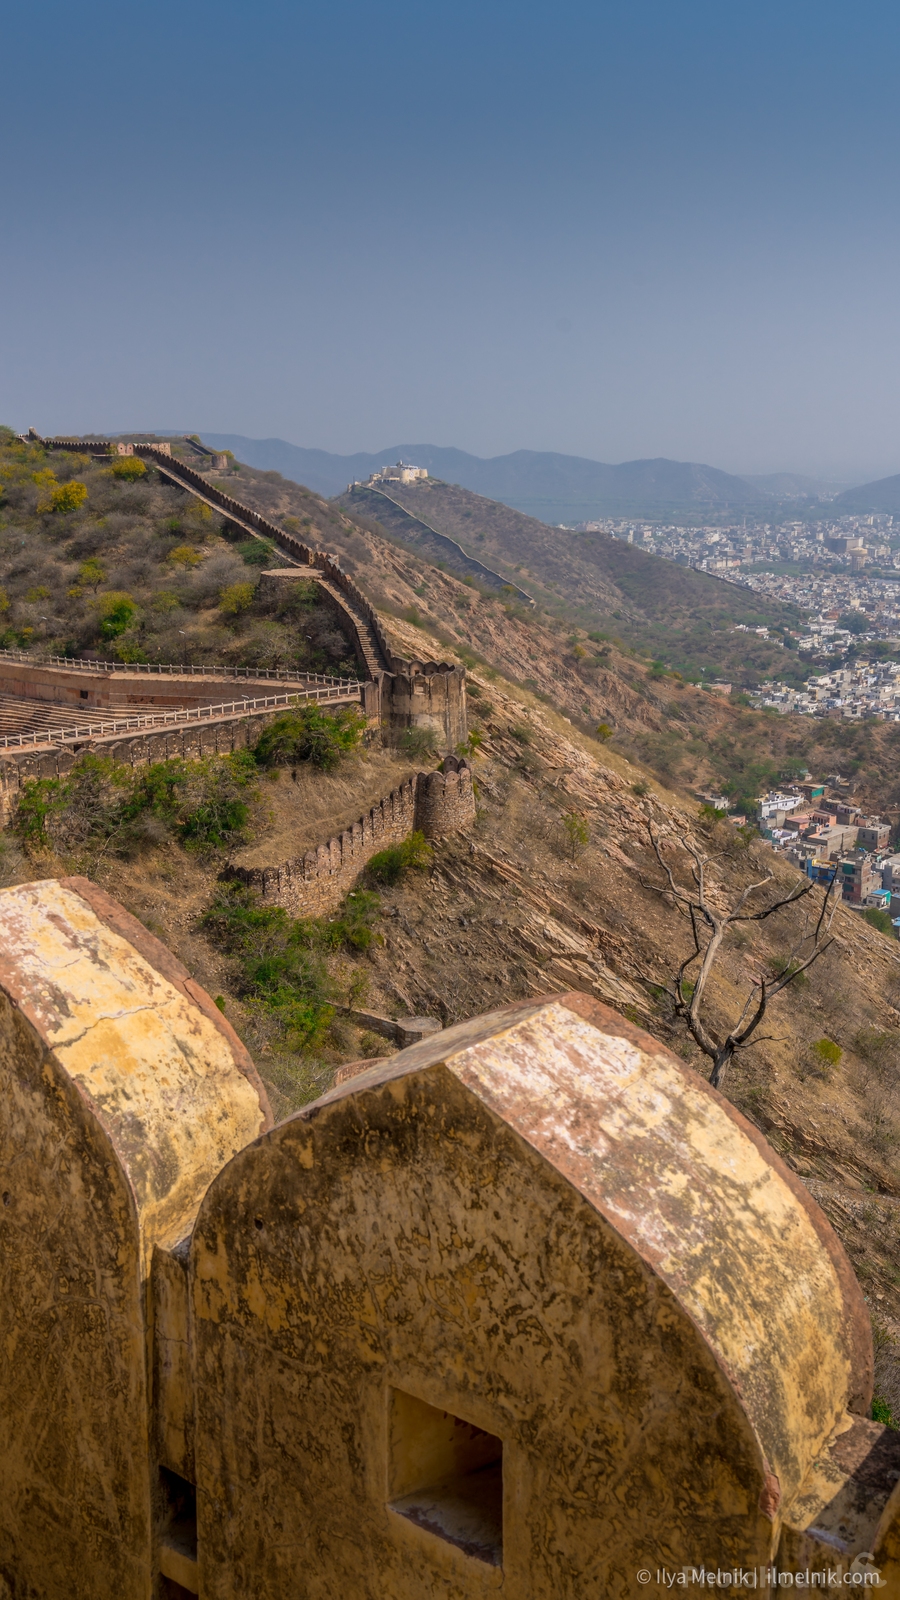 Image of Nahargarh Fort by Ilya Melnik